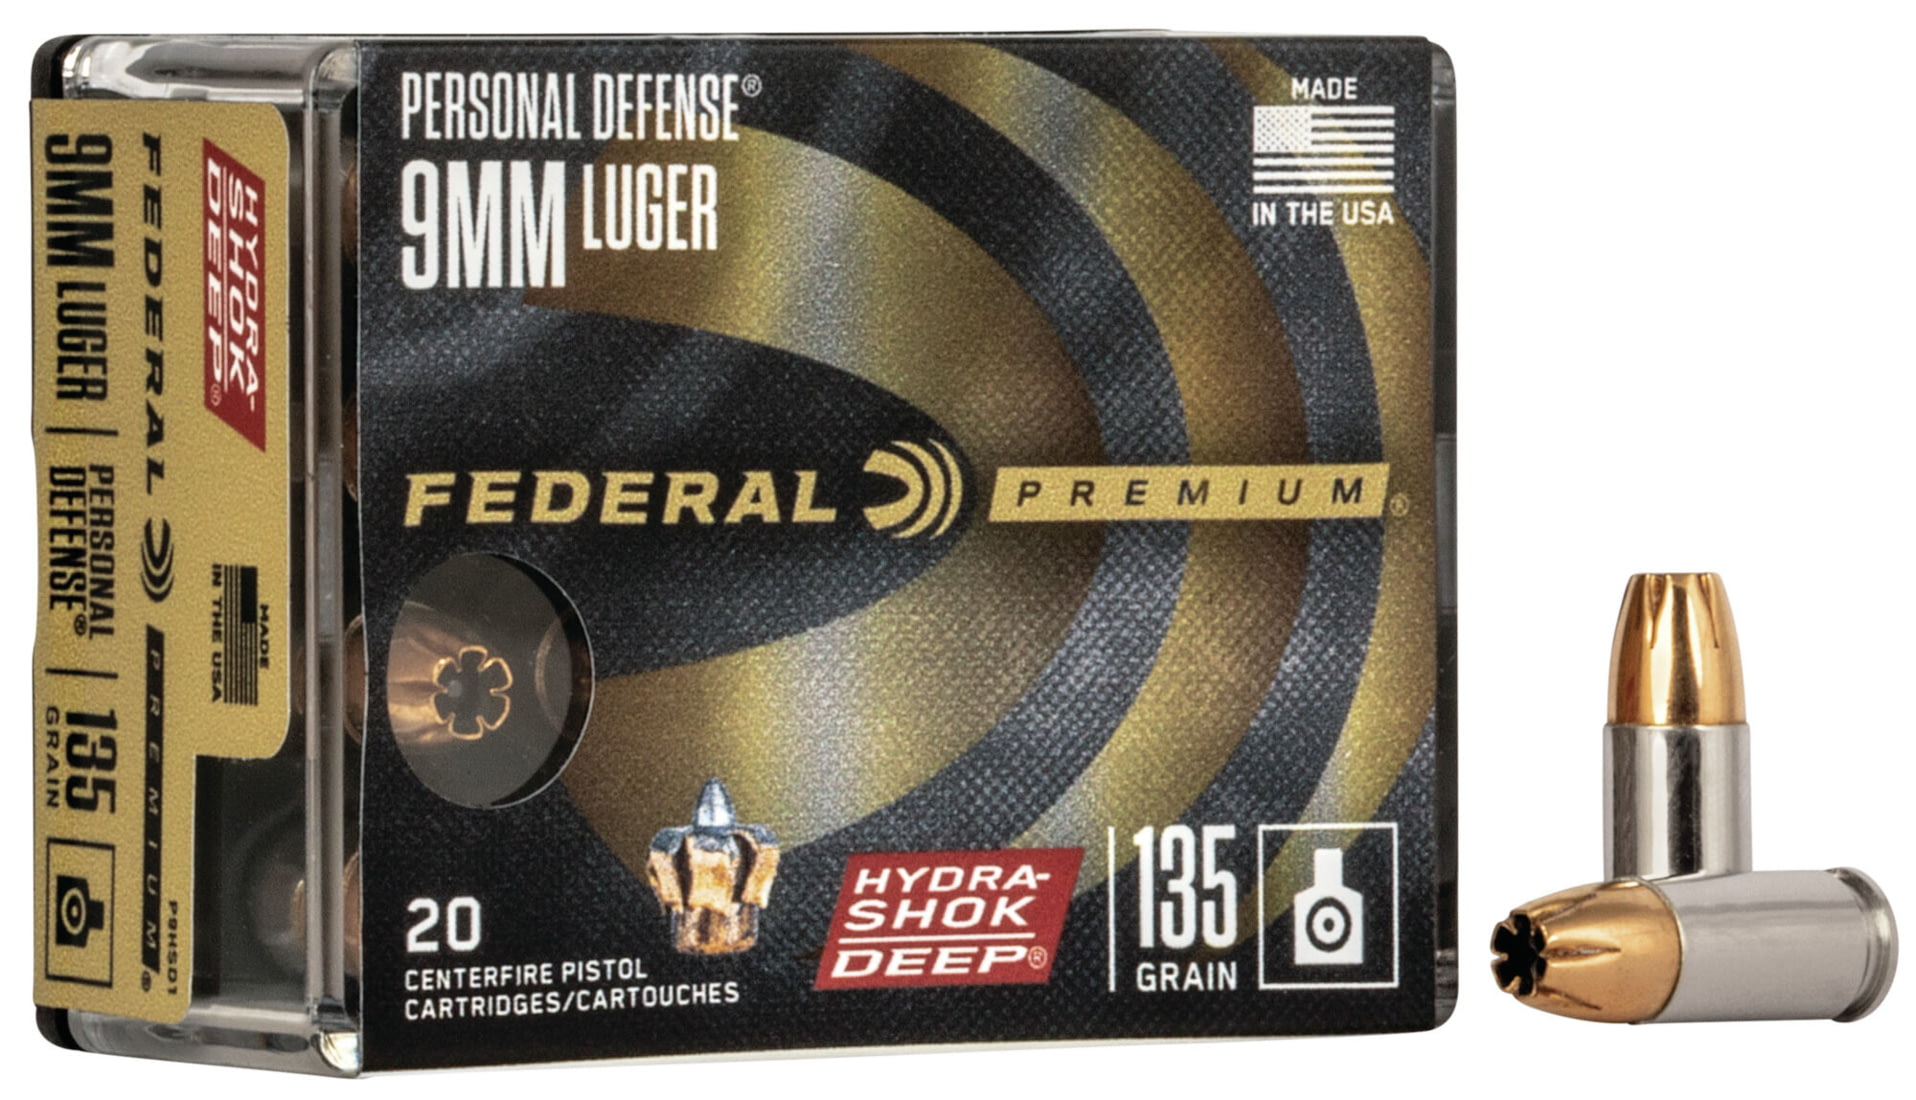 Federal Premium Centerfire Handgun Ammunition 9mm Luger 135 grain Hydra-Shok Deep Jacketed Hollow point Centerfire Pistol Ammunition